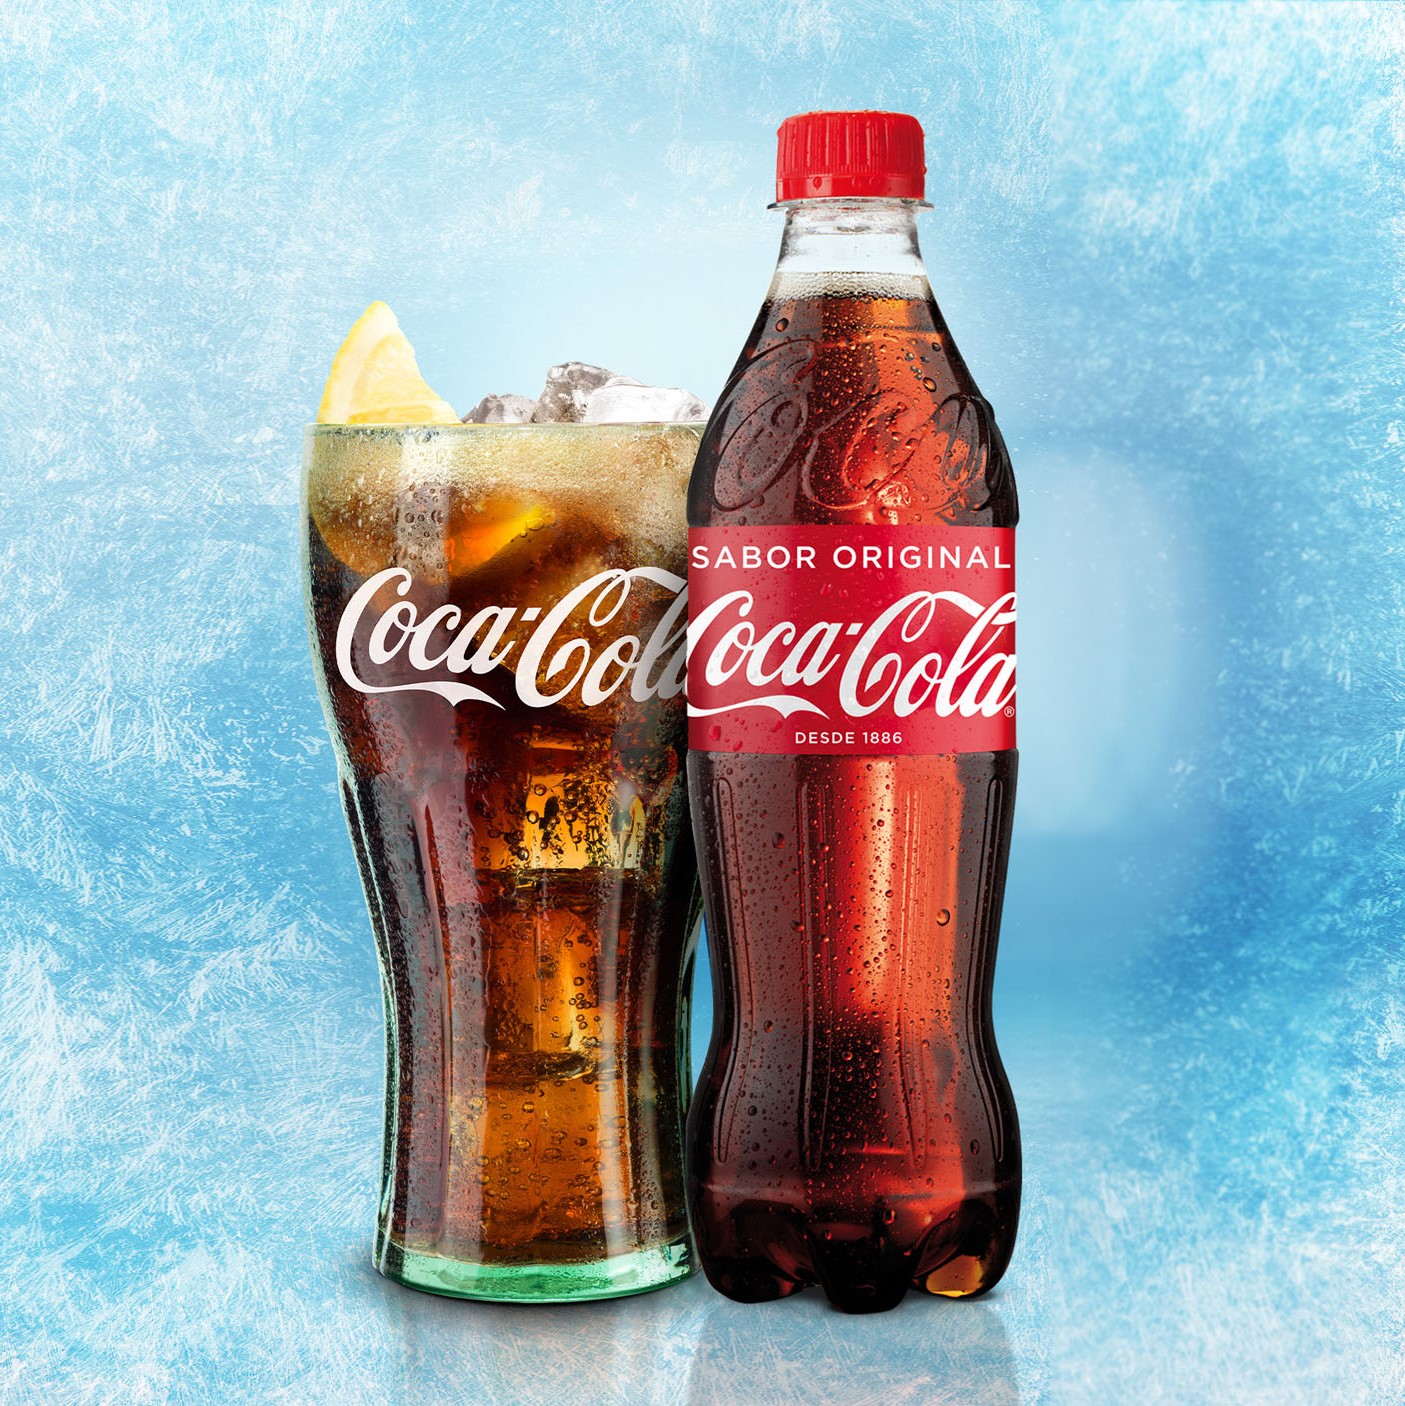 Coca Cola Lata 330ml